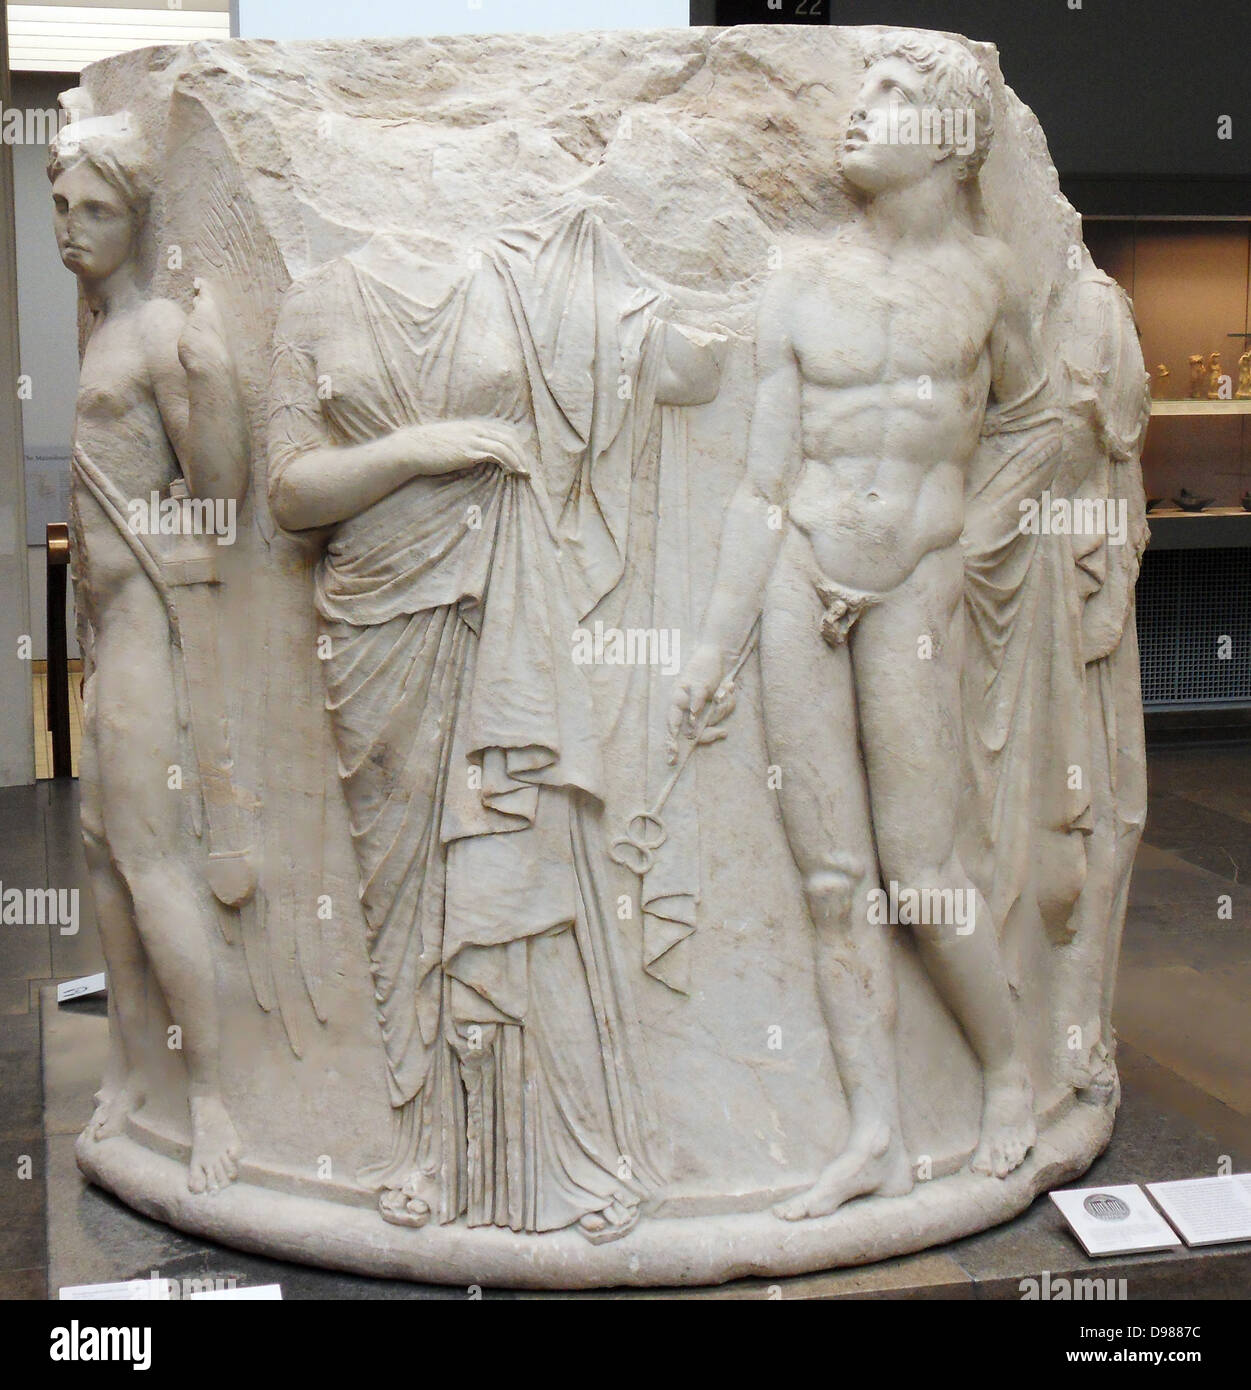 Marmor Spalte aus der Tempel der Artemis in Ephesos in der Türkei. Griechisch, ca. 340-320 v. Chr. eines der sieben Wunder der Welt. Nach oben Hermes, der mit seinem kerykeion (geflügelte Personal) in der rechten Hand und Petasos (Sonnenhut mit breiter Krempe) hinter seinem Kopf blickt. Die Frau vor ihm, die er erscheint zu führen, Stockfoto